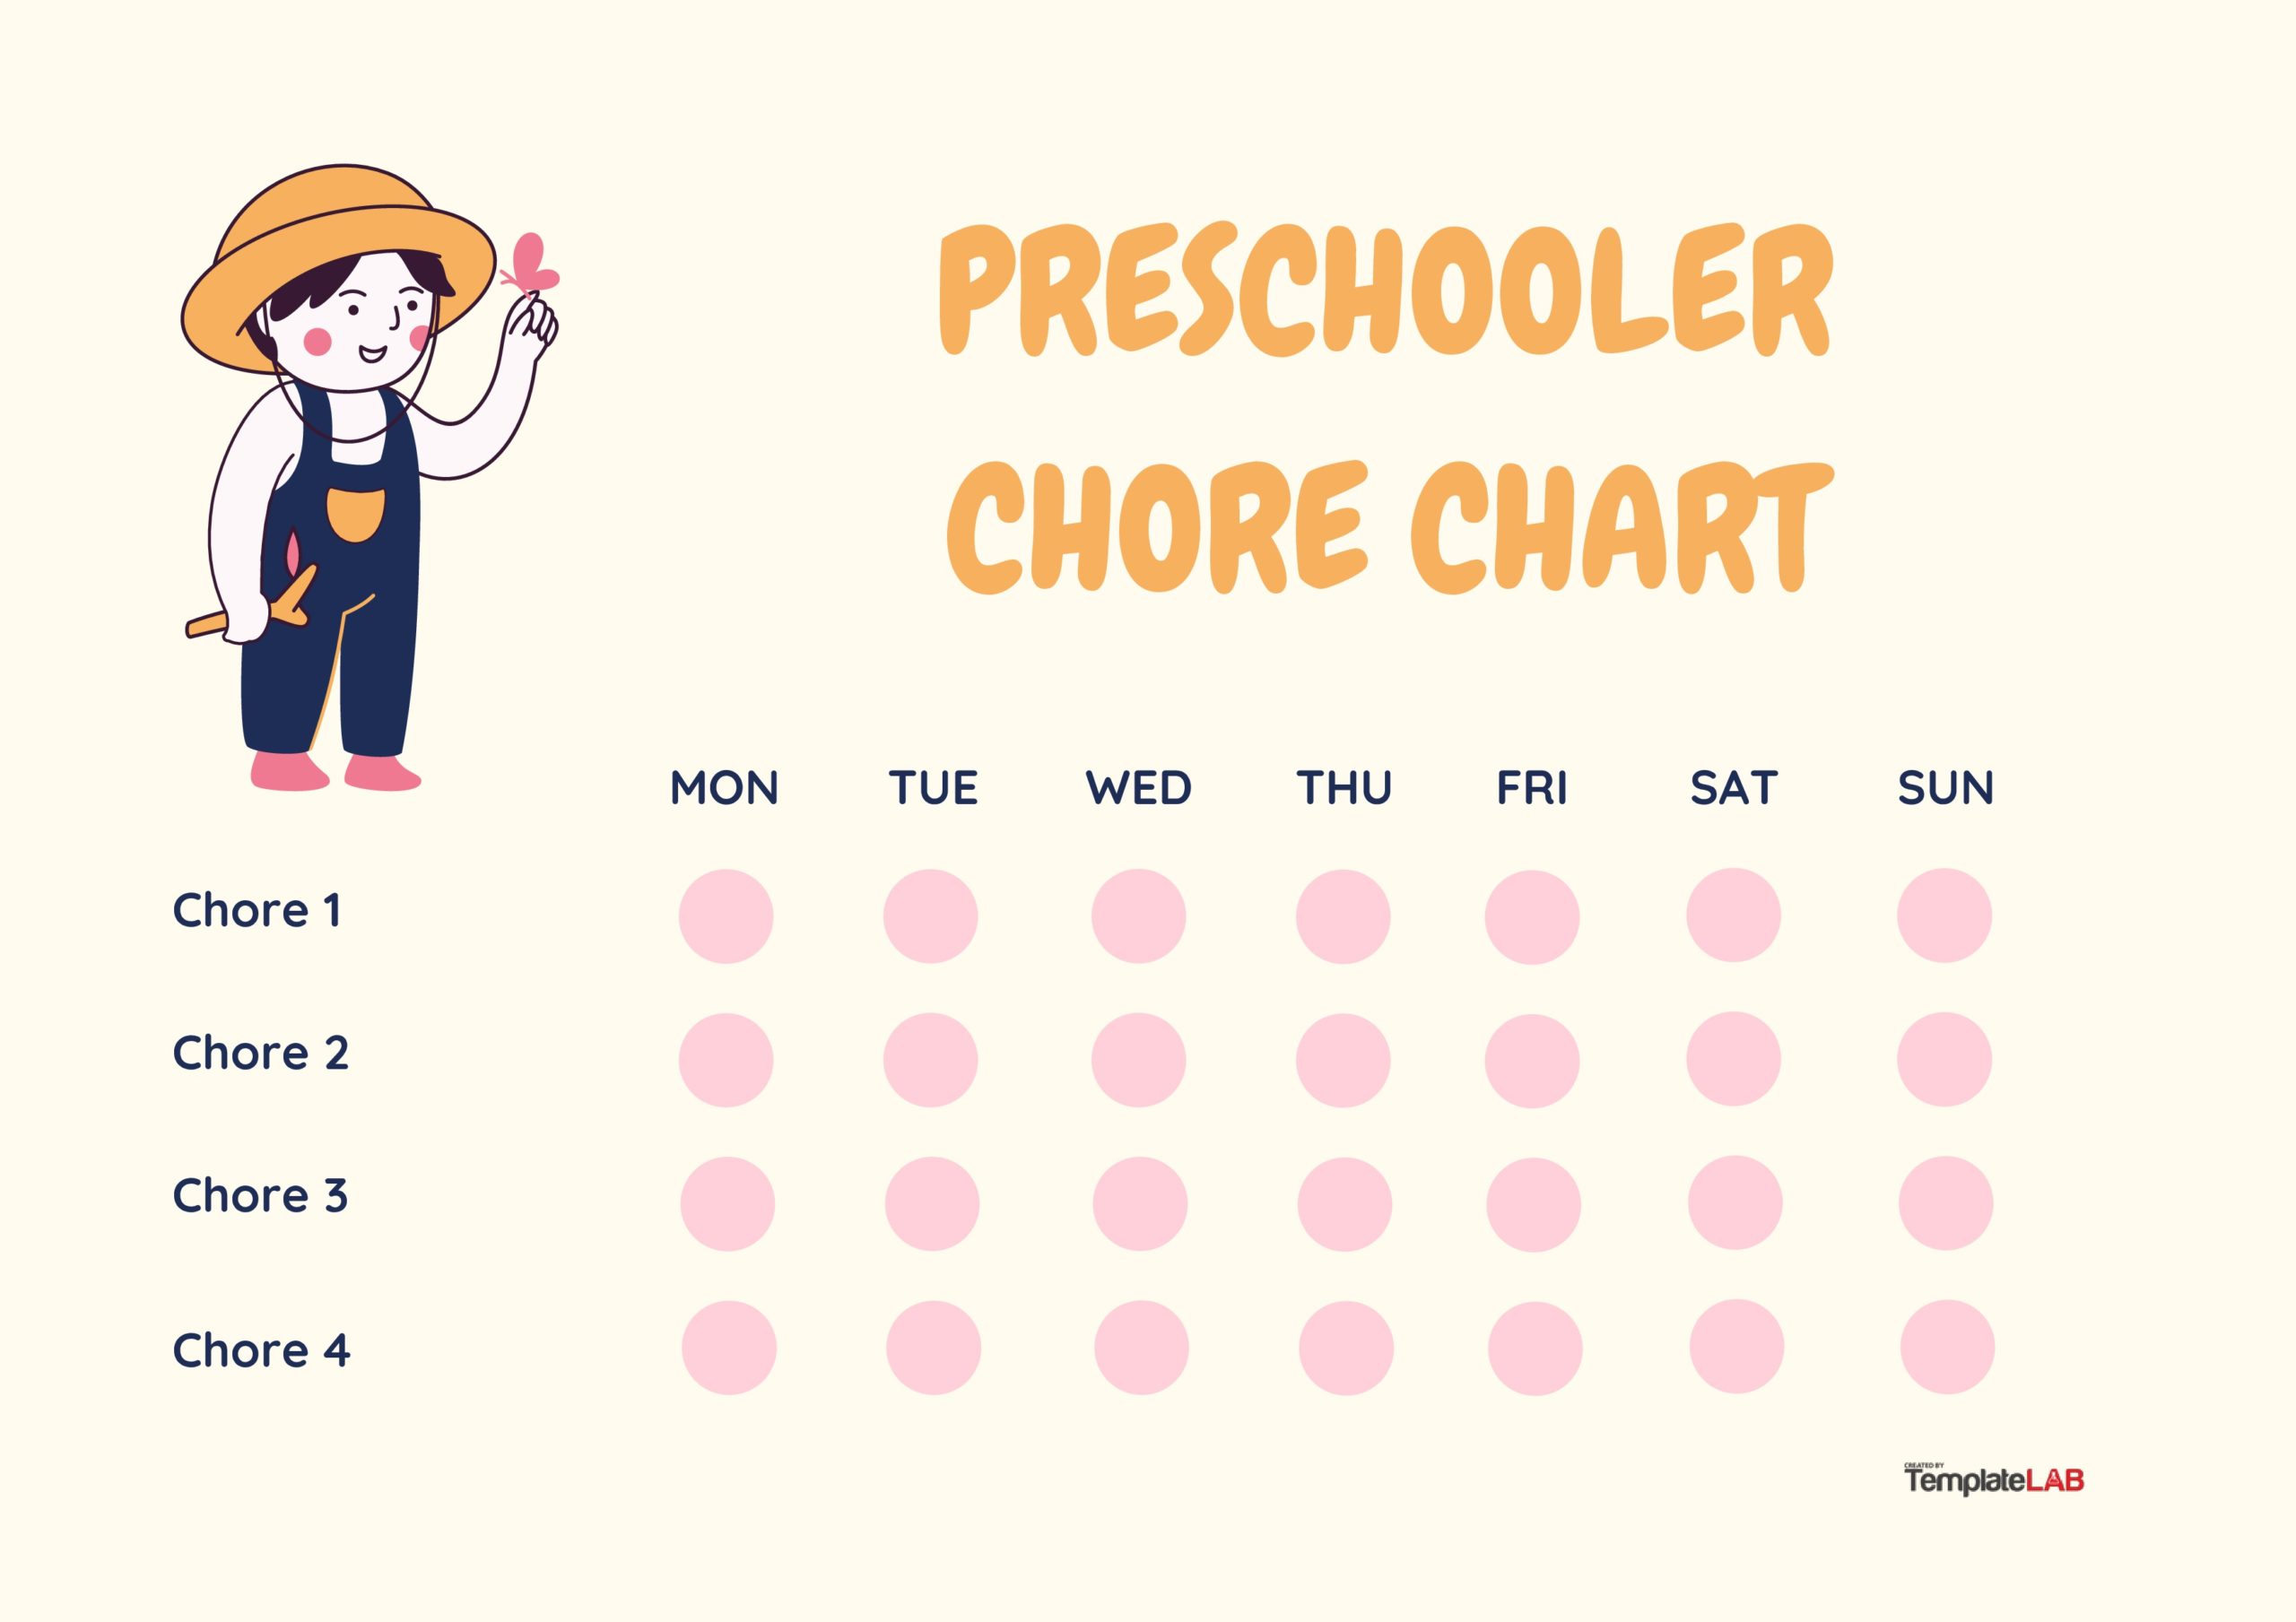 Free Preschooler Chore Chart